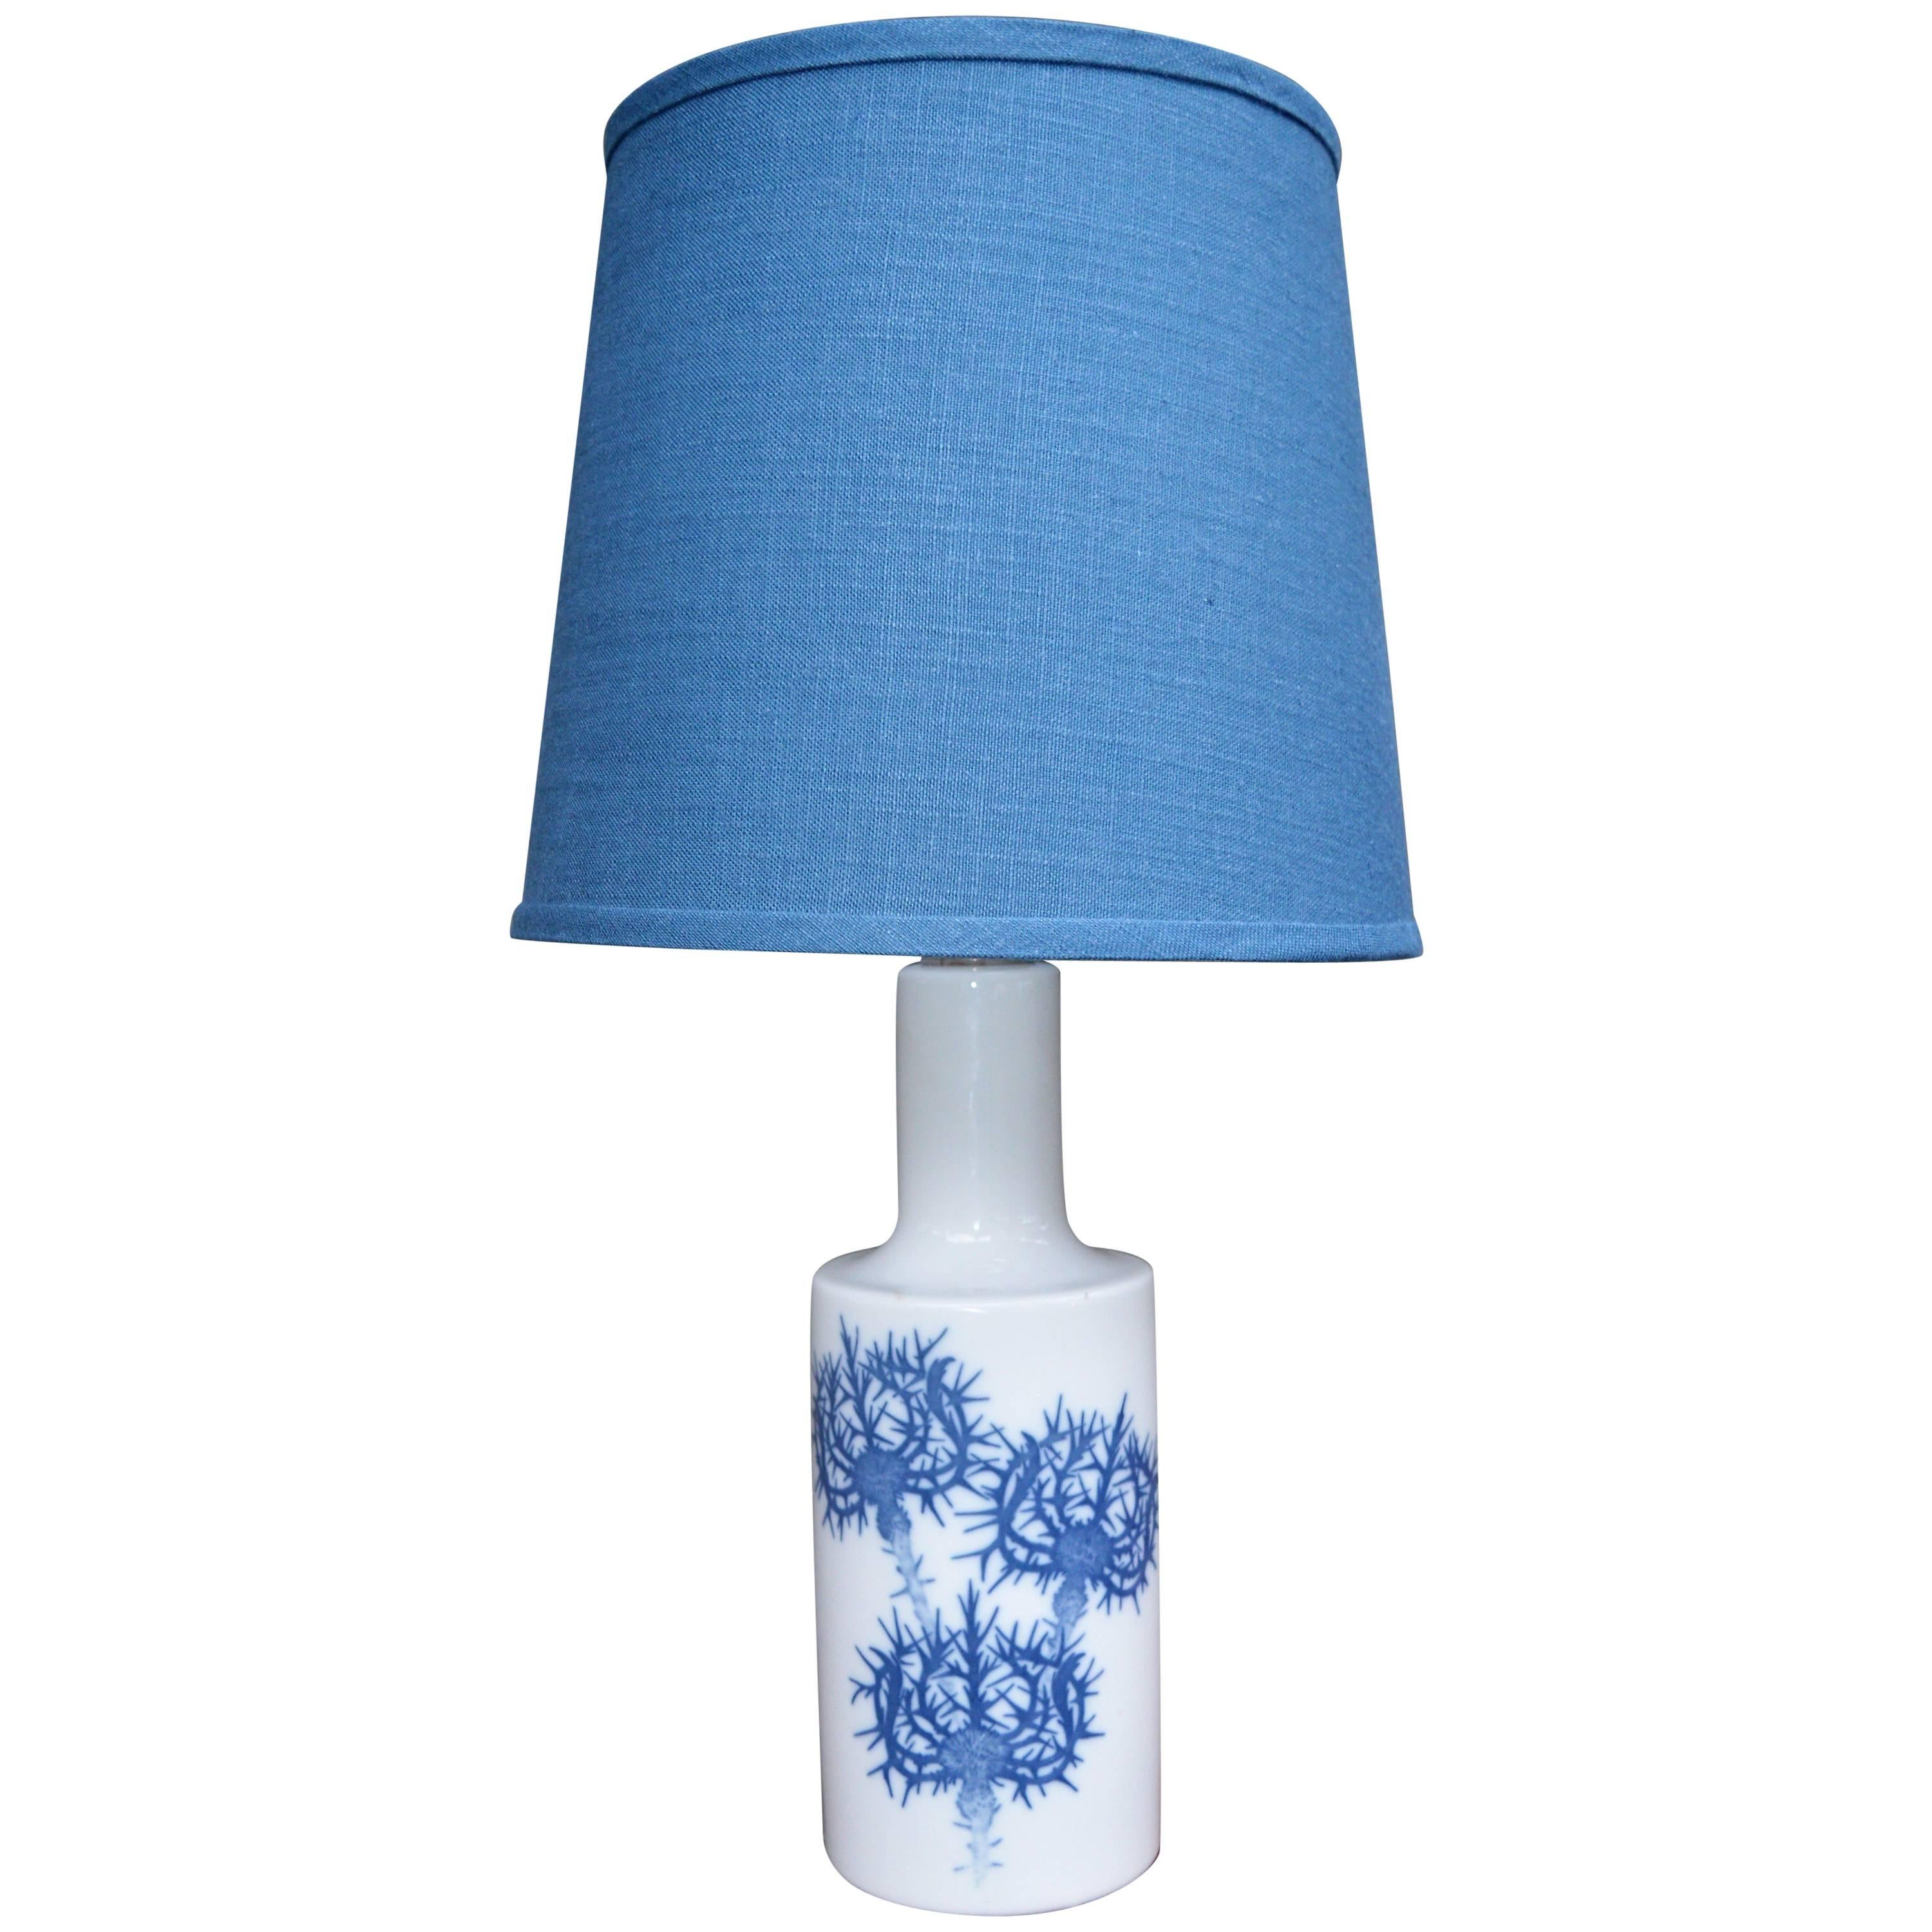 Blue Ceramic Thistle Lamp by Fog & Mørup for Royal Copenhagen New Blue Shade